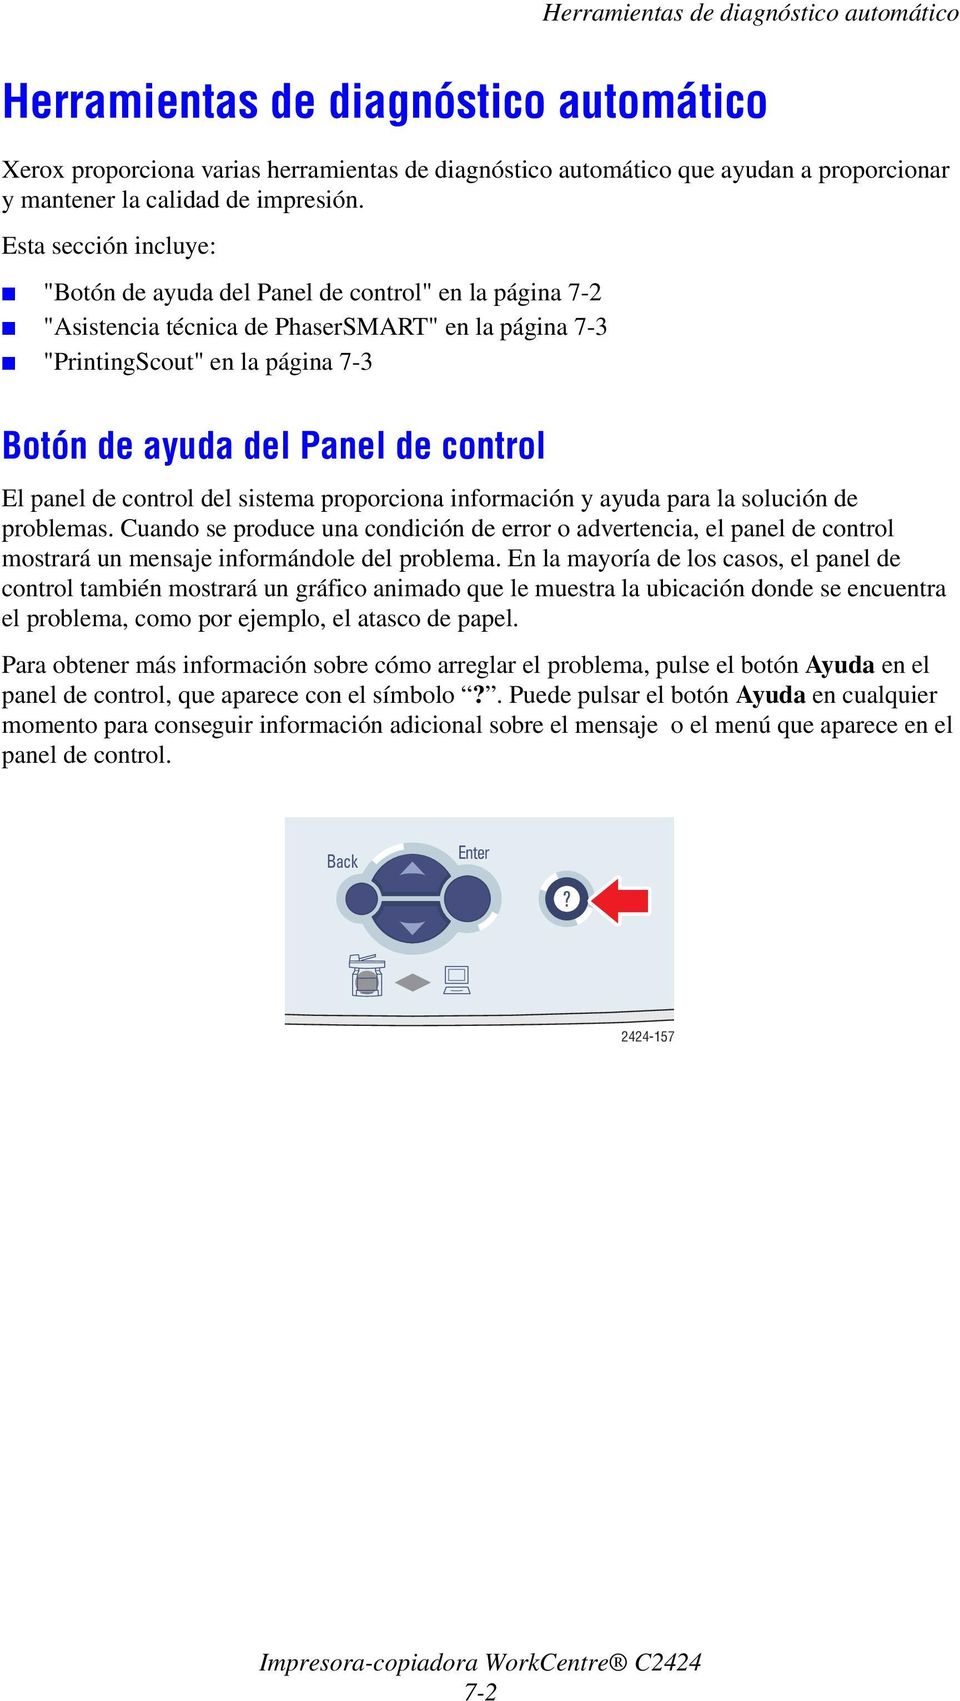 Esta sección incluye: "Botón de ayuda del Panel de control" en la página 7-2 "Asistencia técnica de PhaserSMART" en la página 7-3 "PrintingScout" en la página 7-3 Botón de ayuda del Panel de control